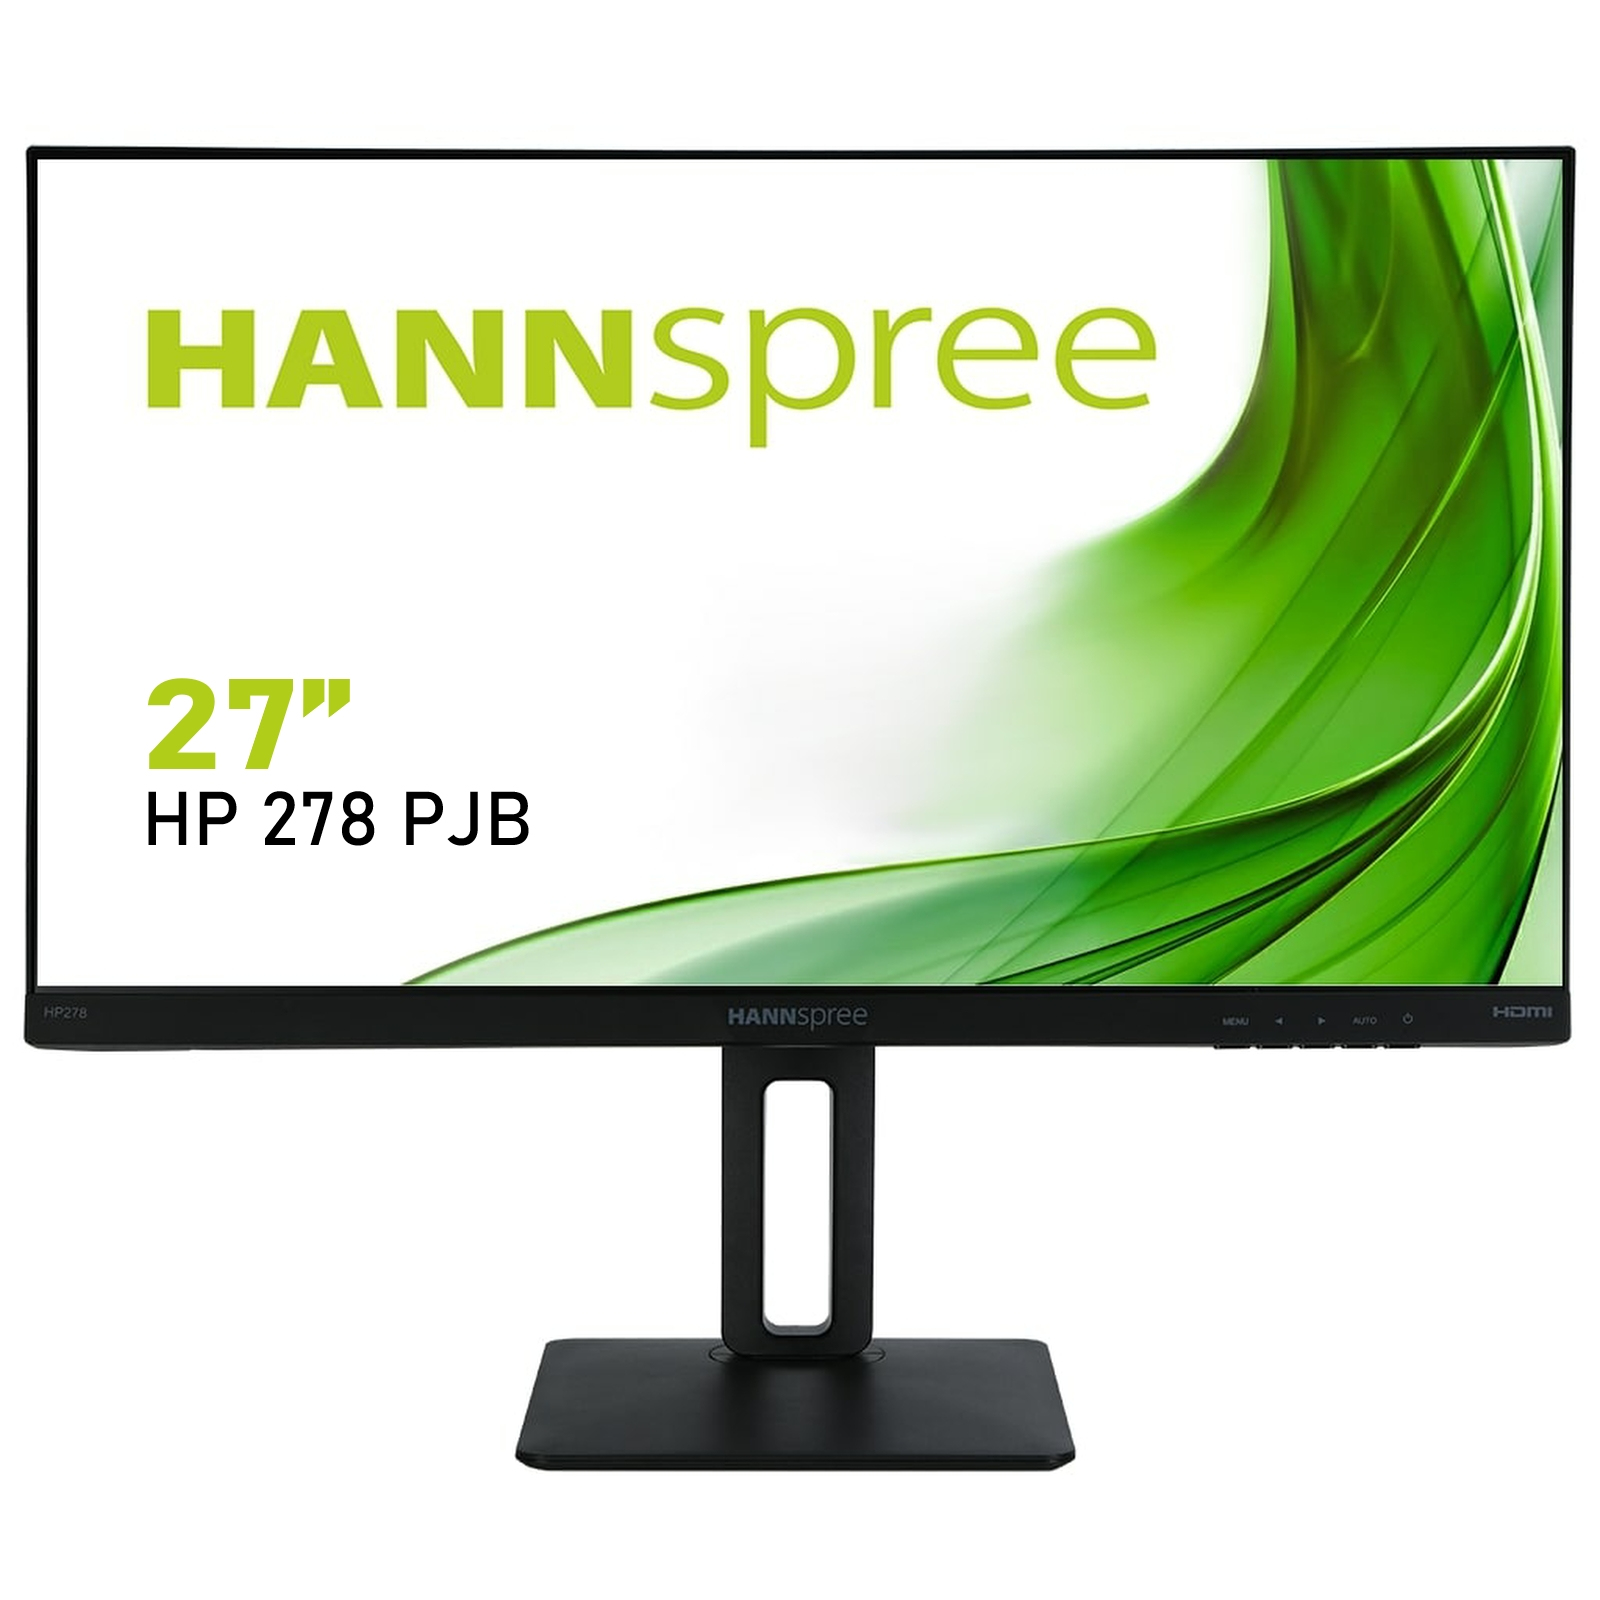 Hannspree HP278PJB computer monitor